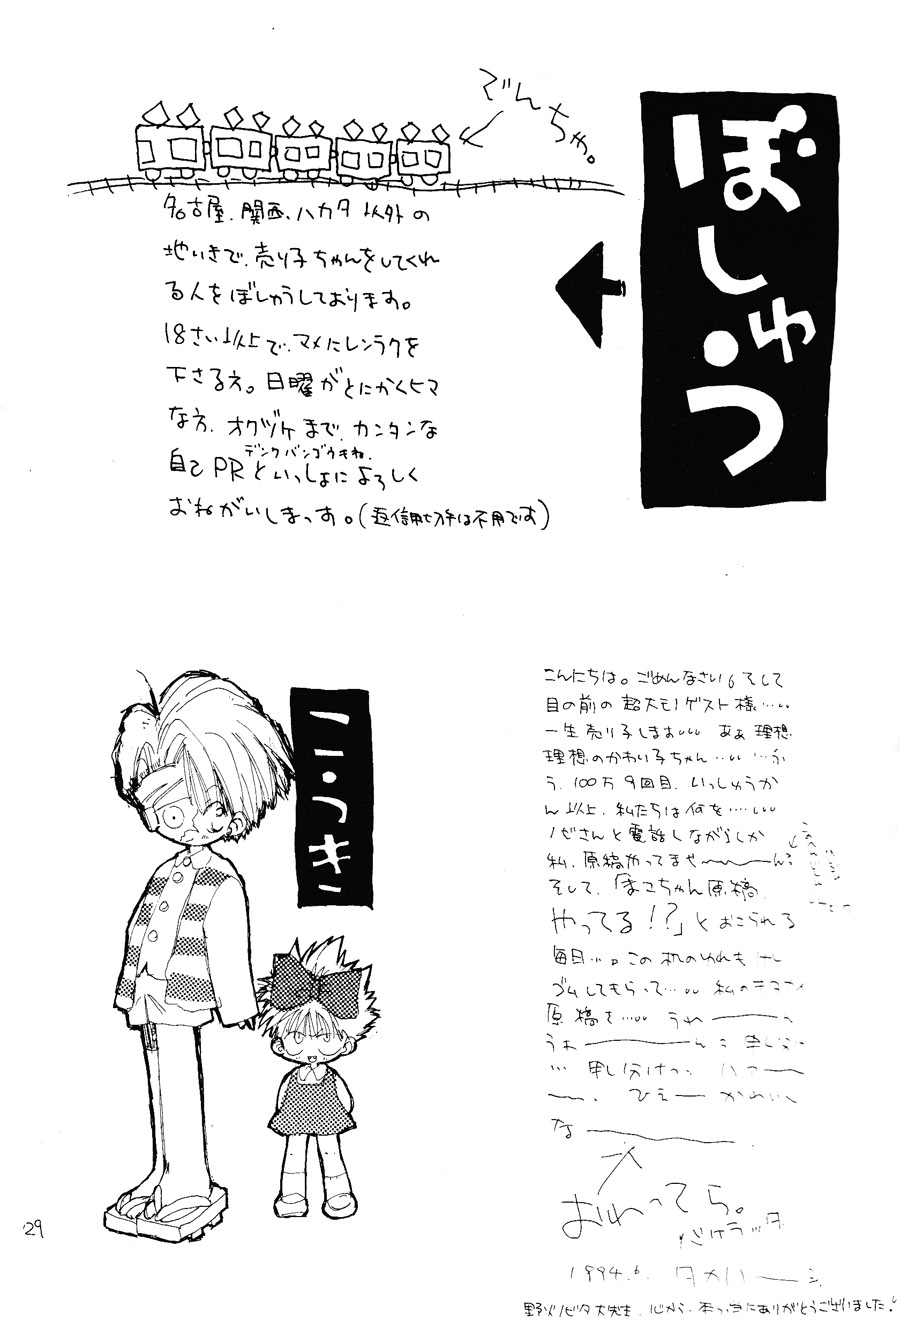 【漫画】PIKAPIKA/タカハシマコ《彩虹维奥莱塔》 Img_6900